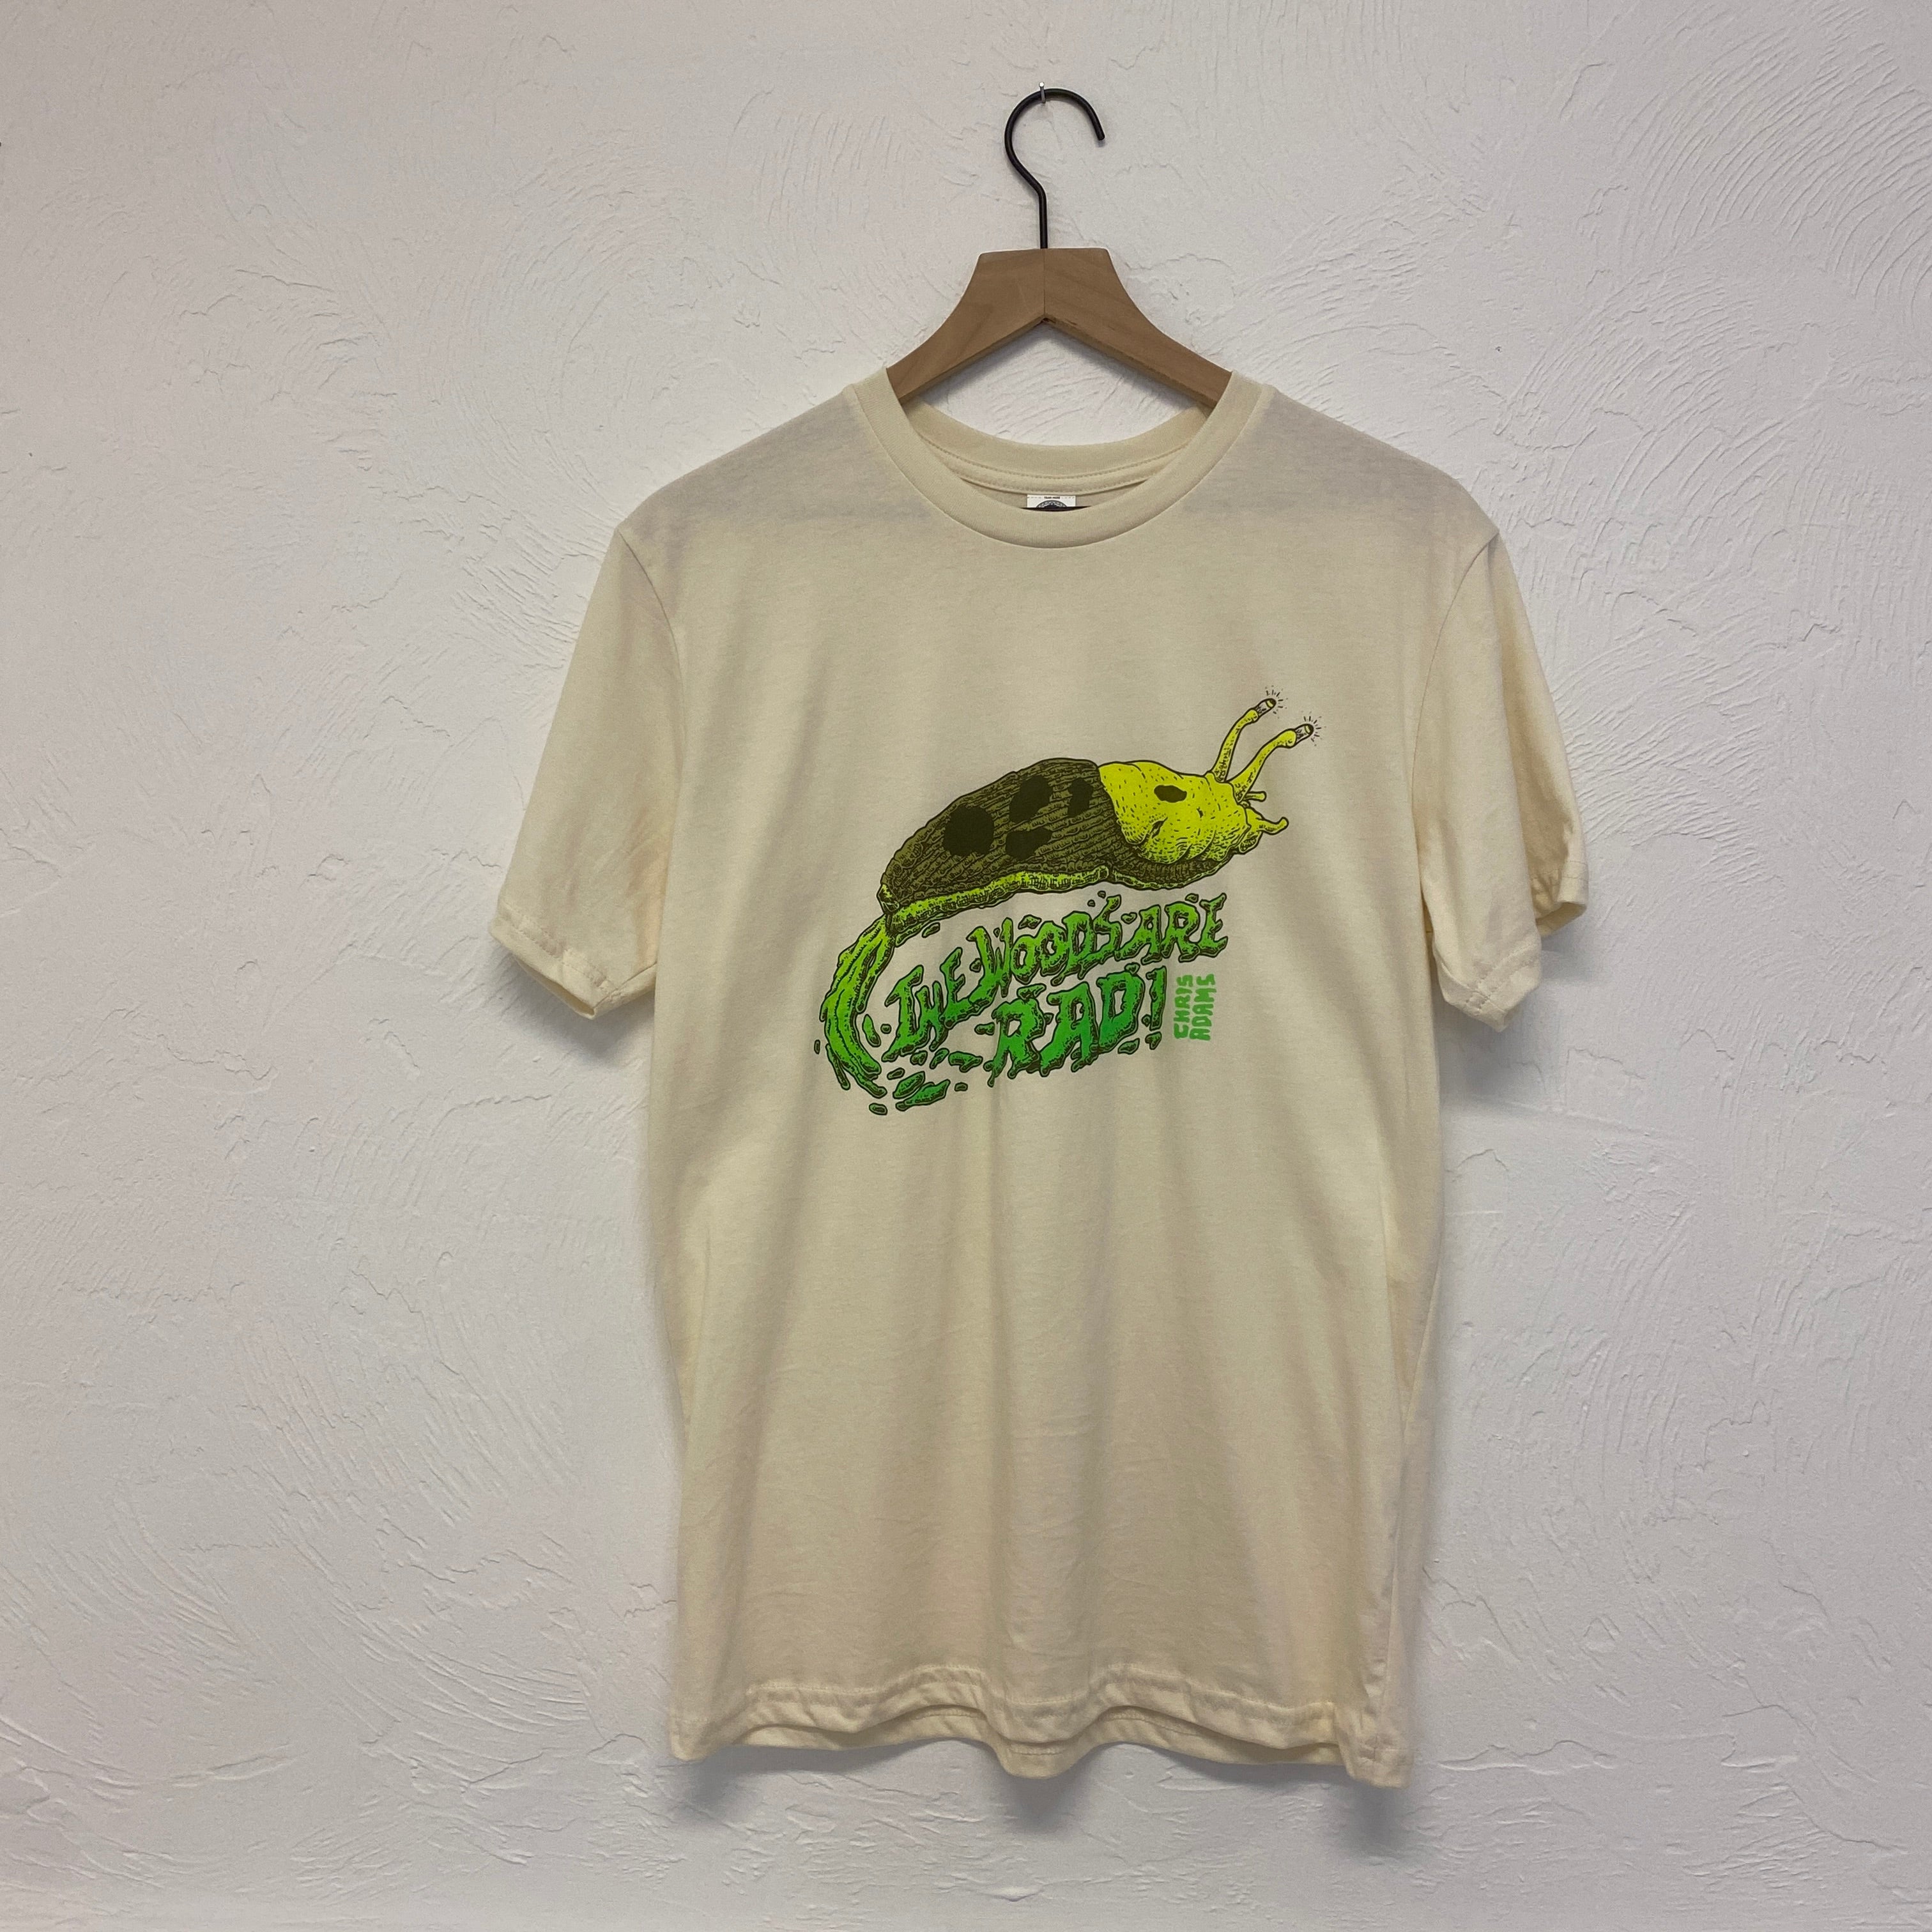 TWAR Banana Slug Shirt, Cream Cotton